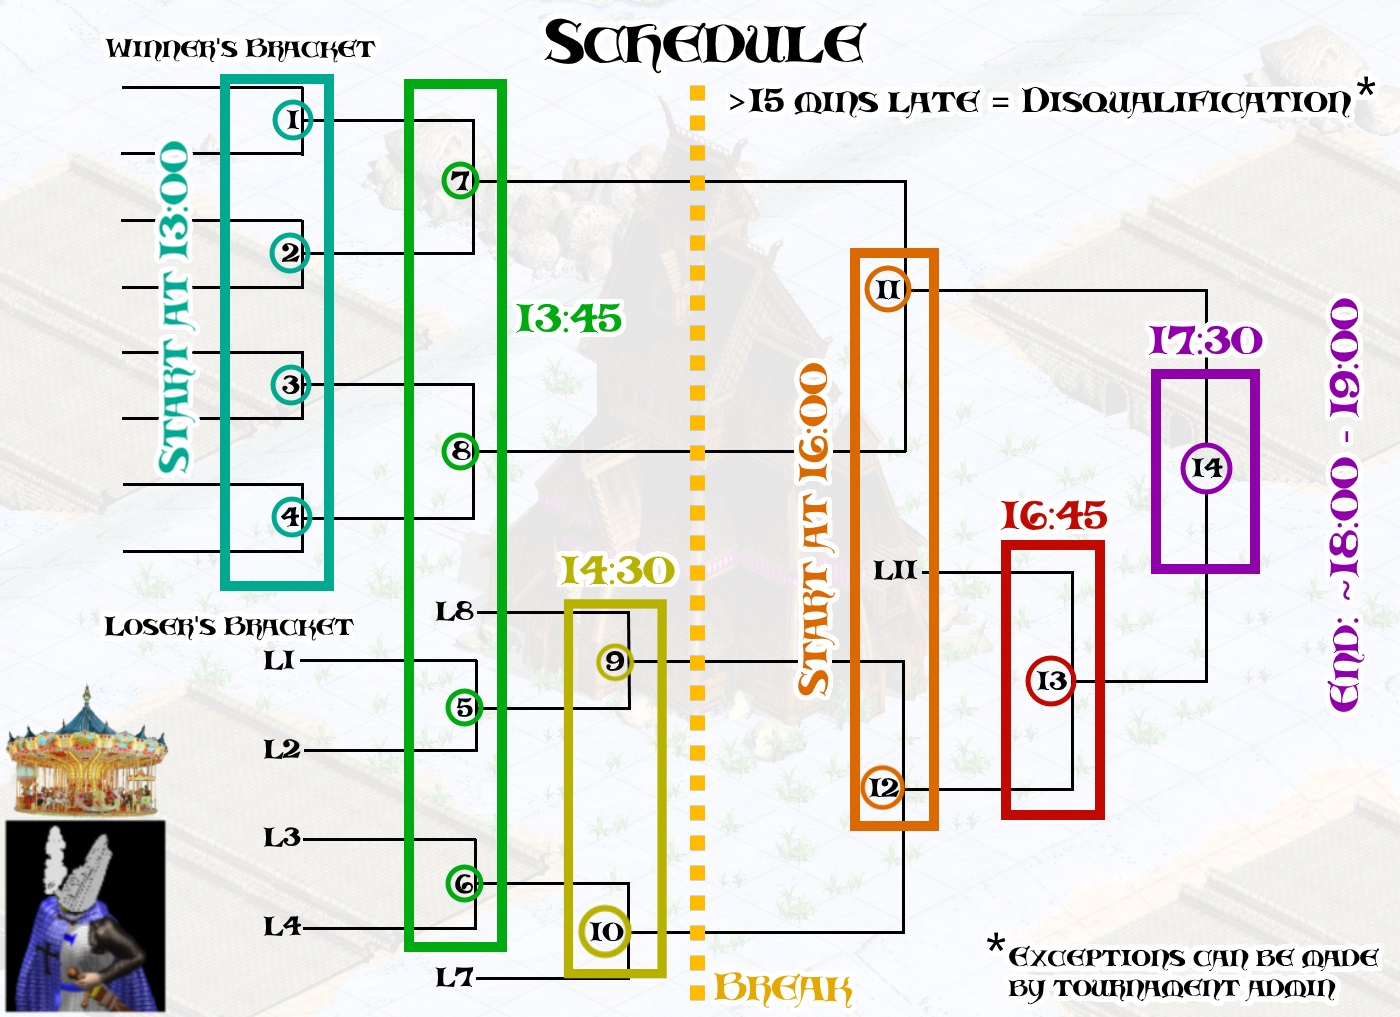 tournament-schedule-2.jpg